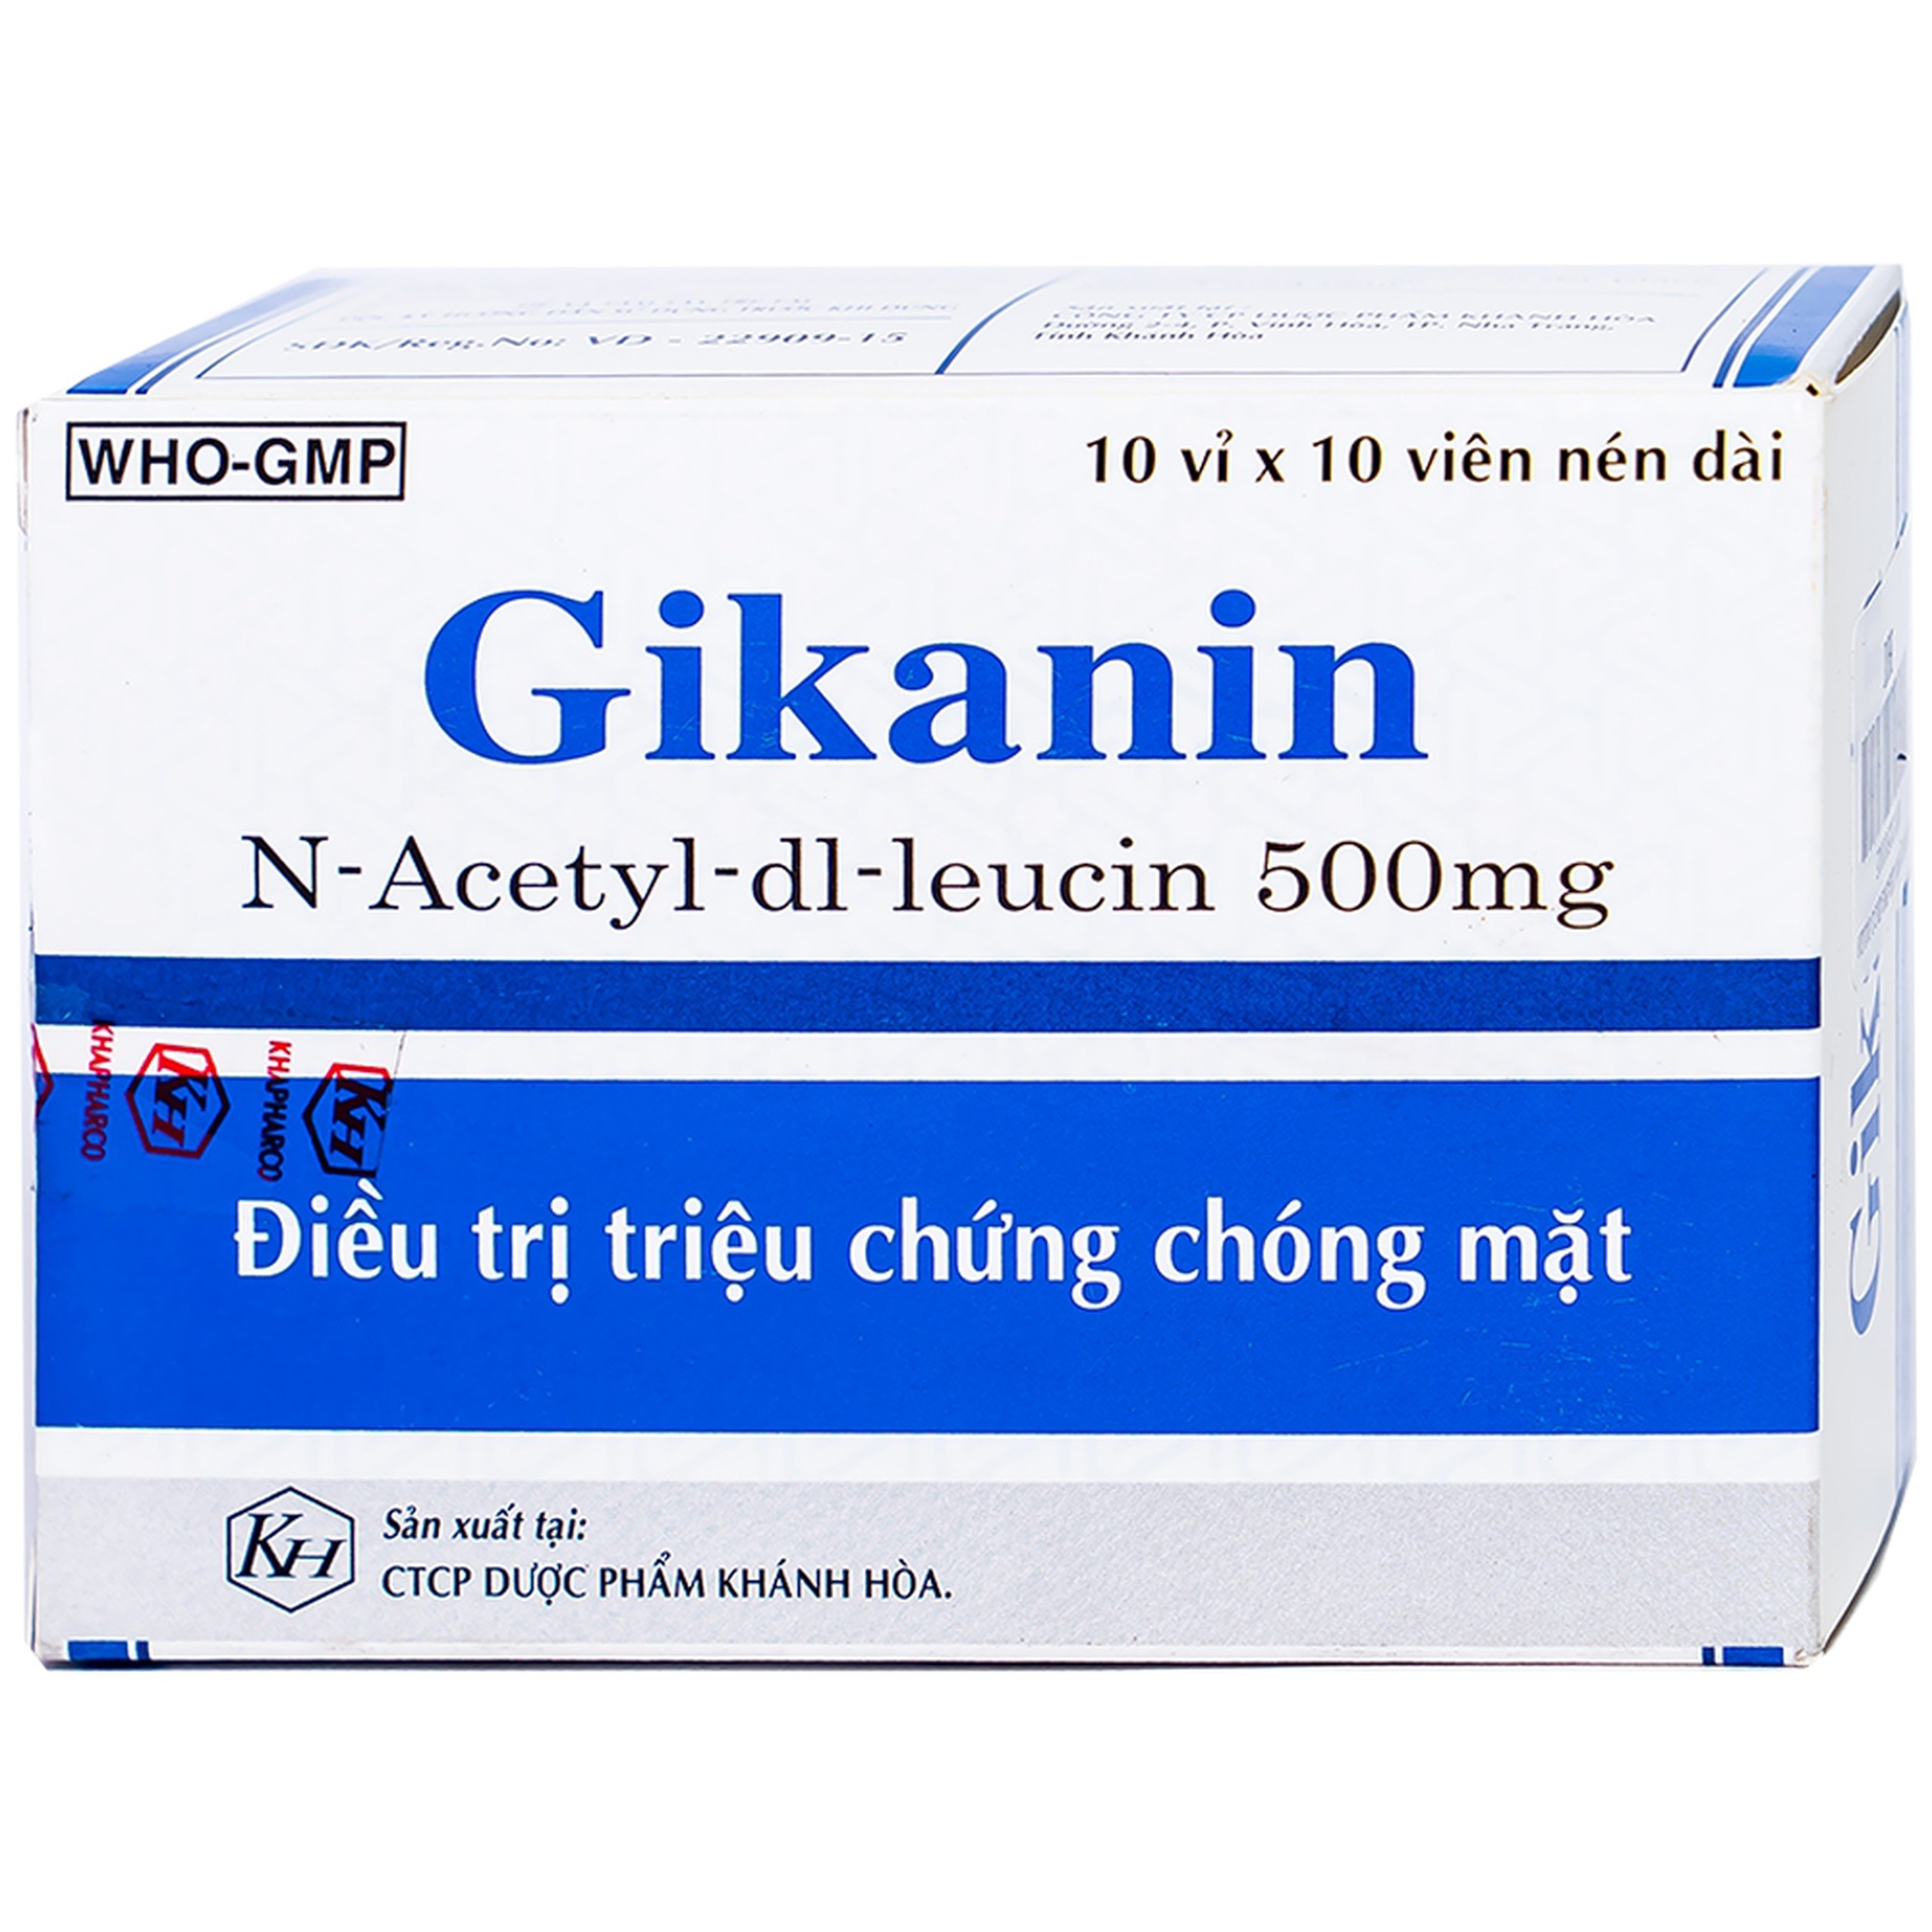 Thuốc Gikanin 500mg Khapharco điều trị chứng chóng mặt (10 vỉ x 10 viên)